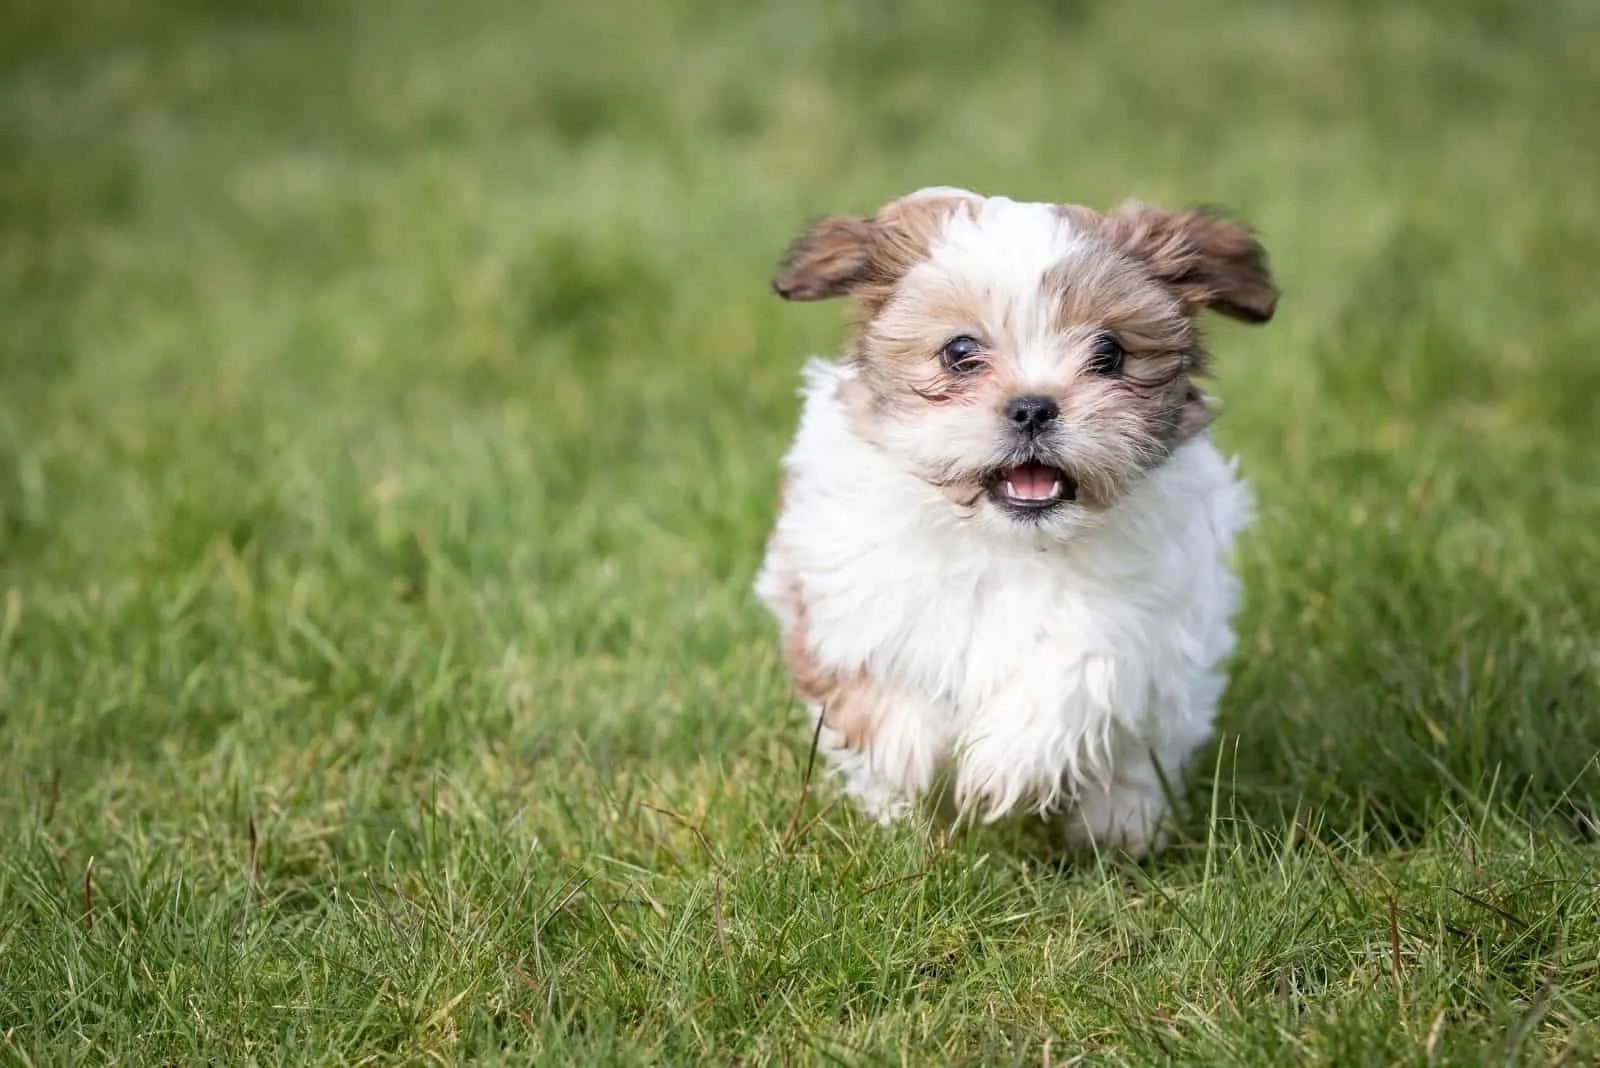 shih tzu puppy running in the grass